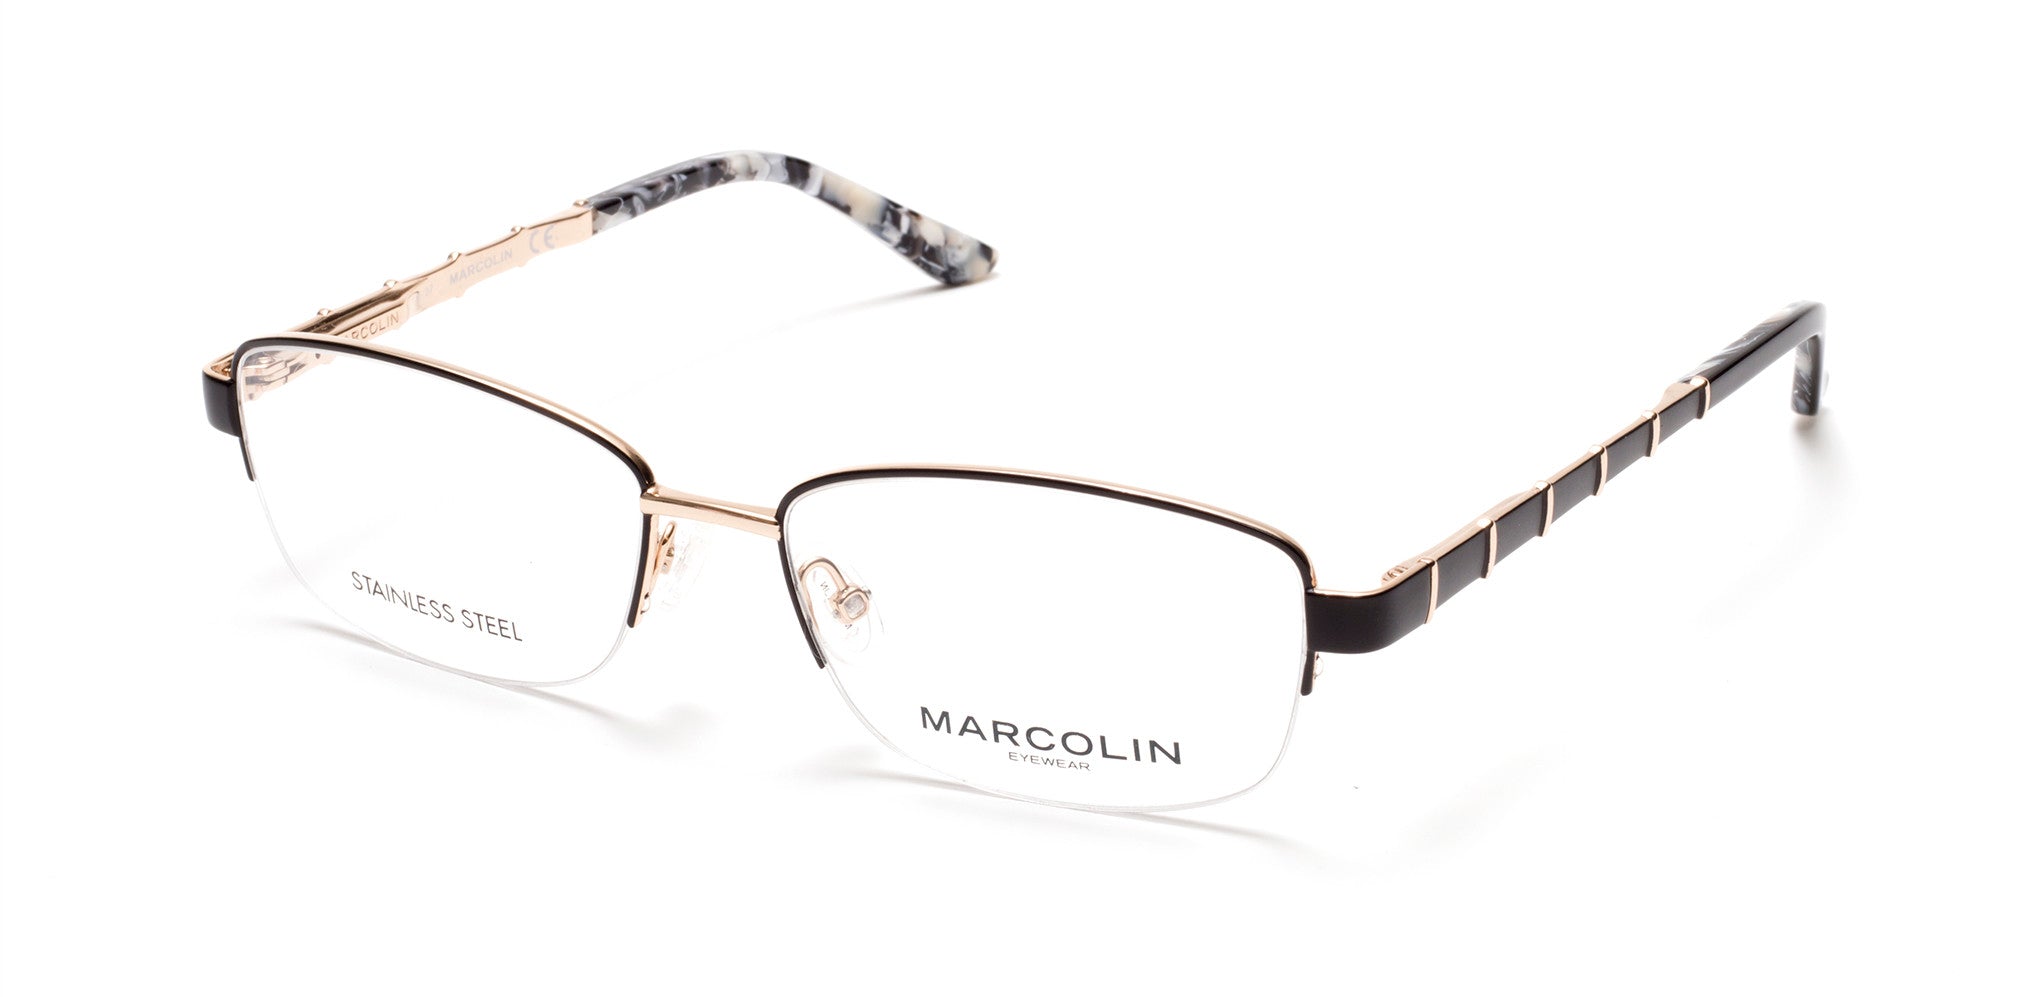 Marcolin MA5015 Oval Eyeglasses 005-005 - Black